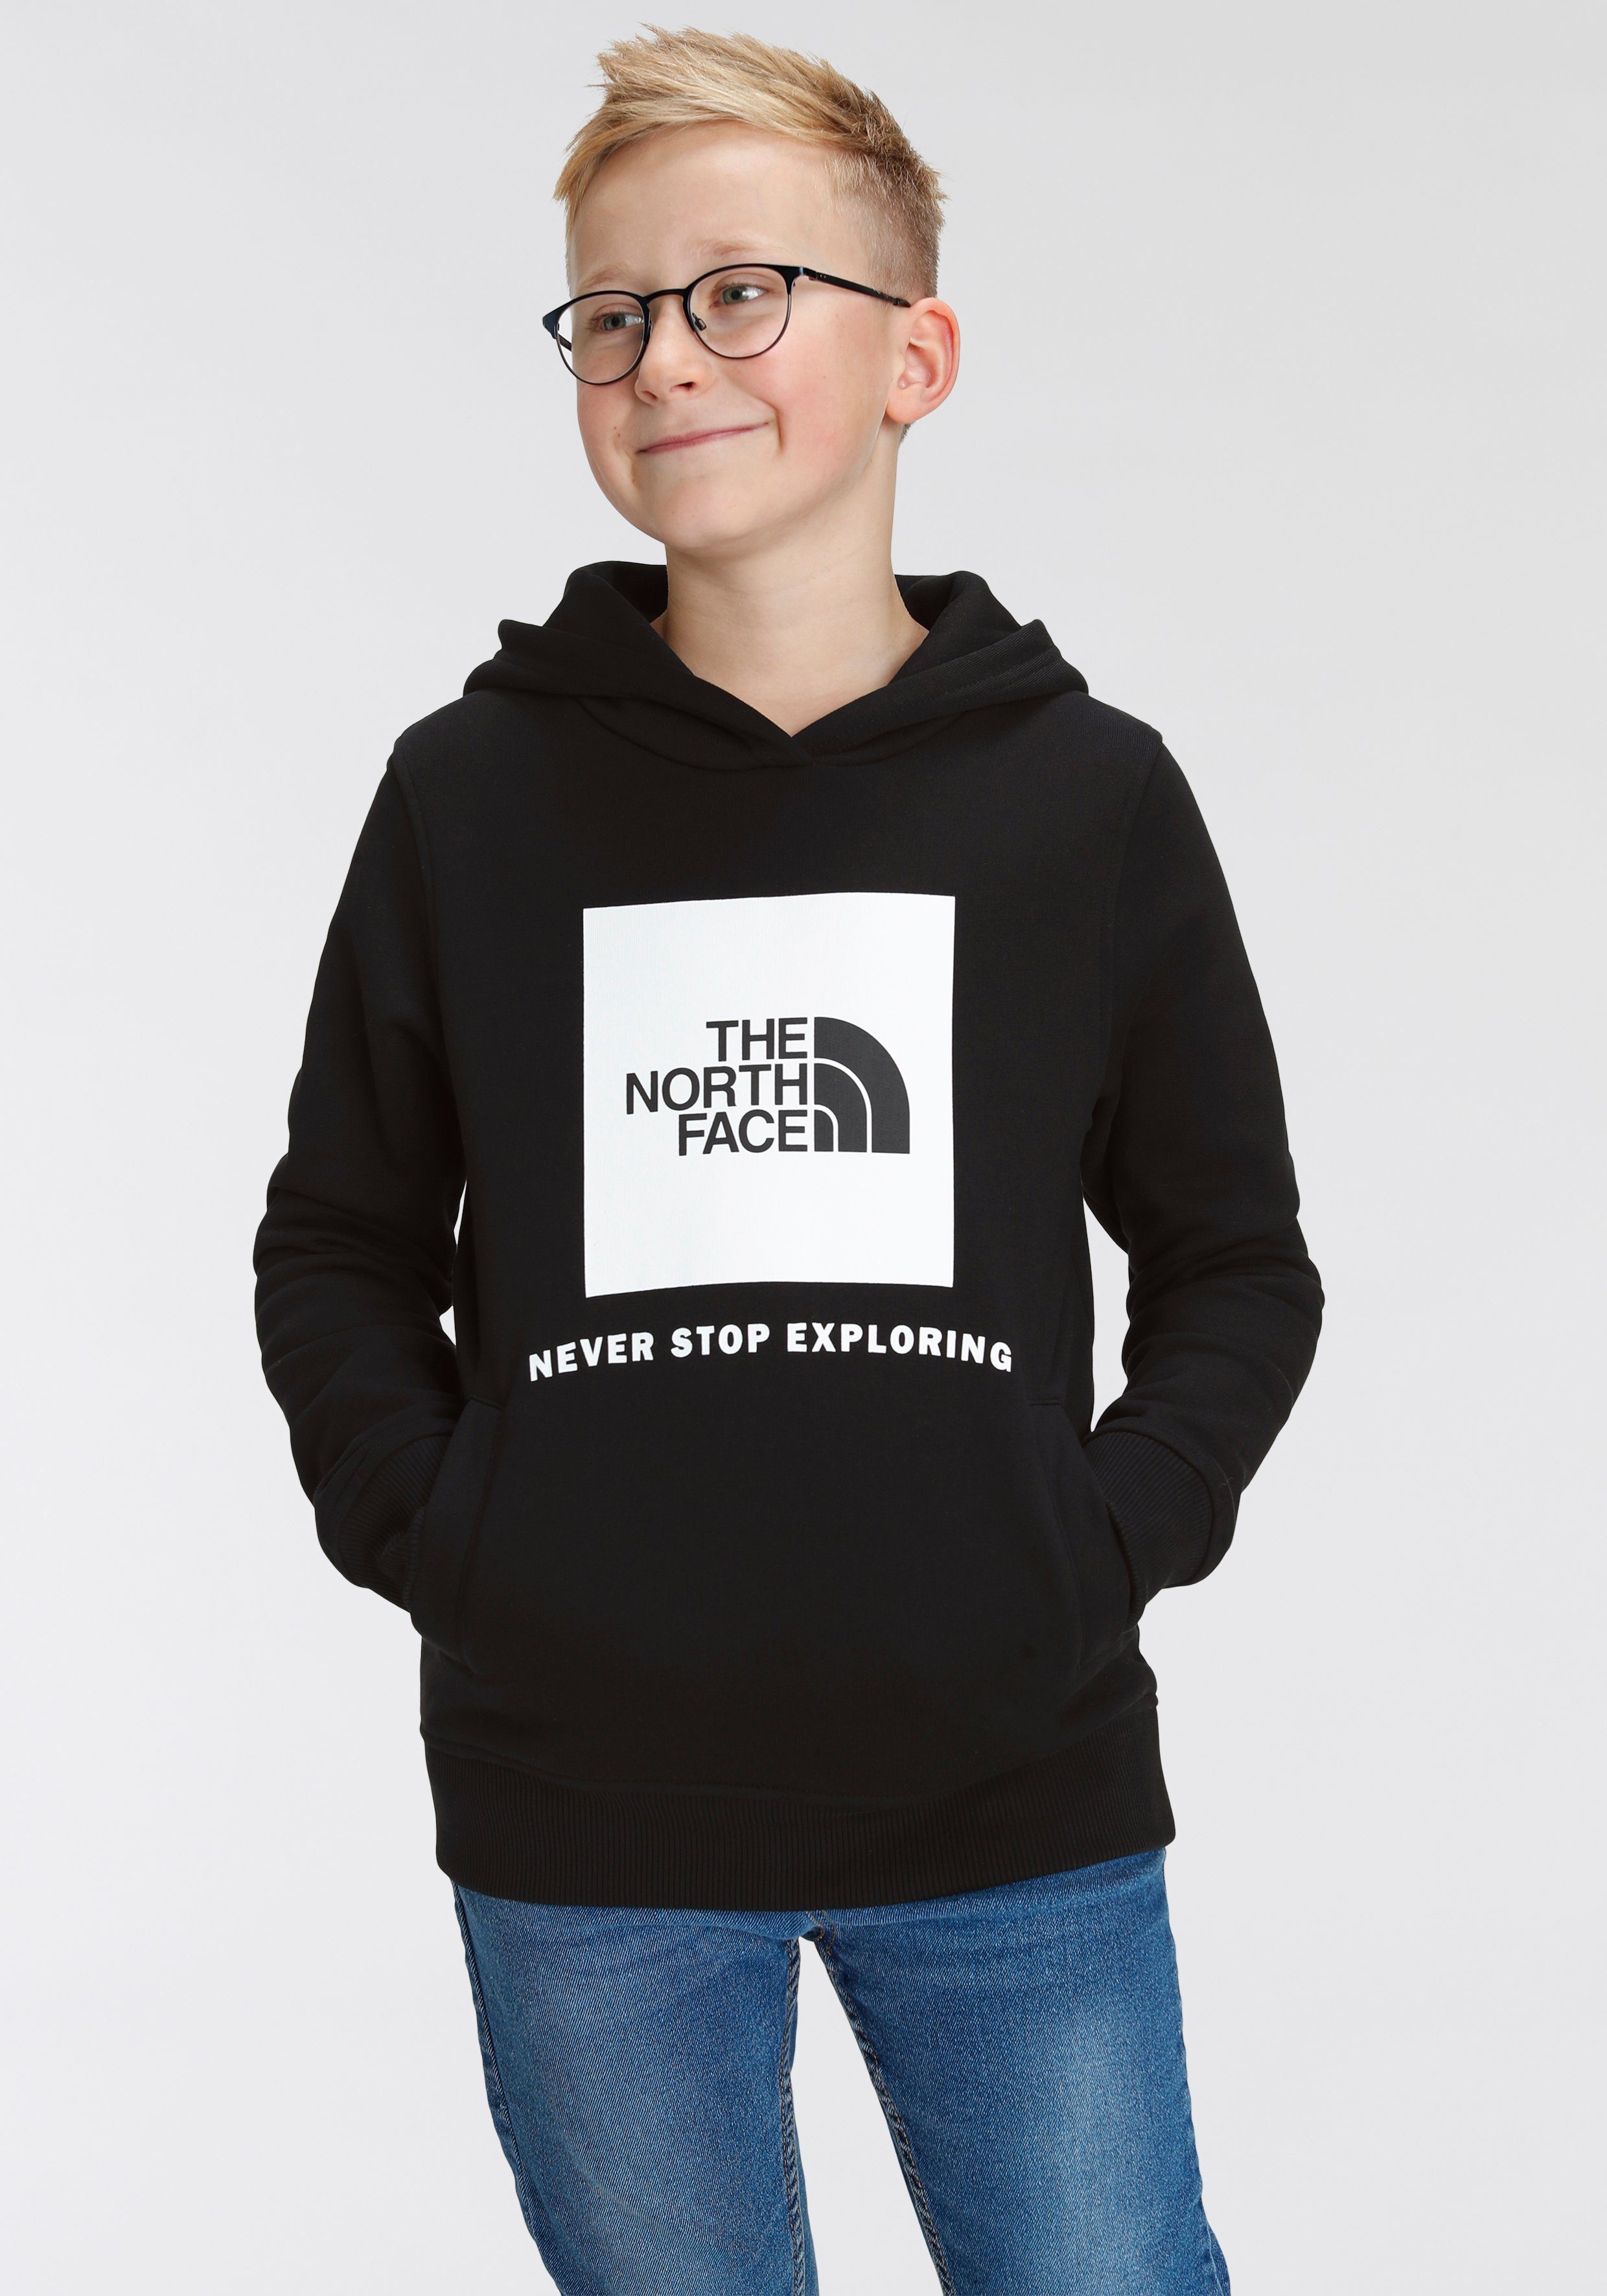 North Face schwarz The für BOX TEENS Kinder Kapuzensweatshirt